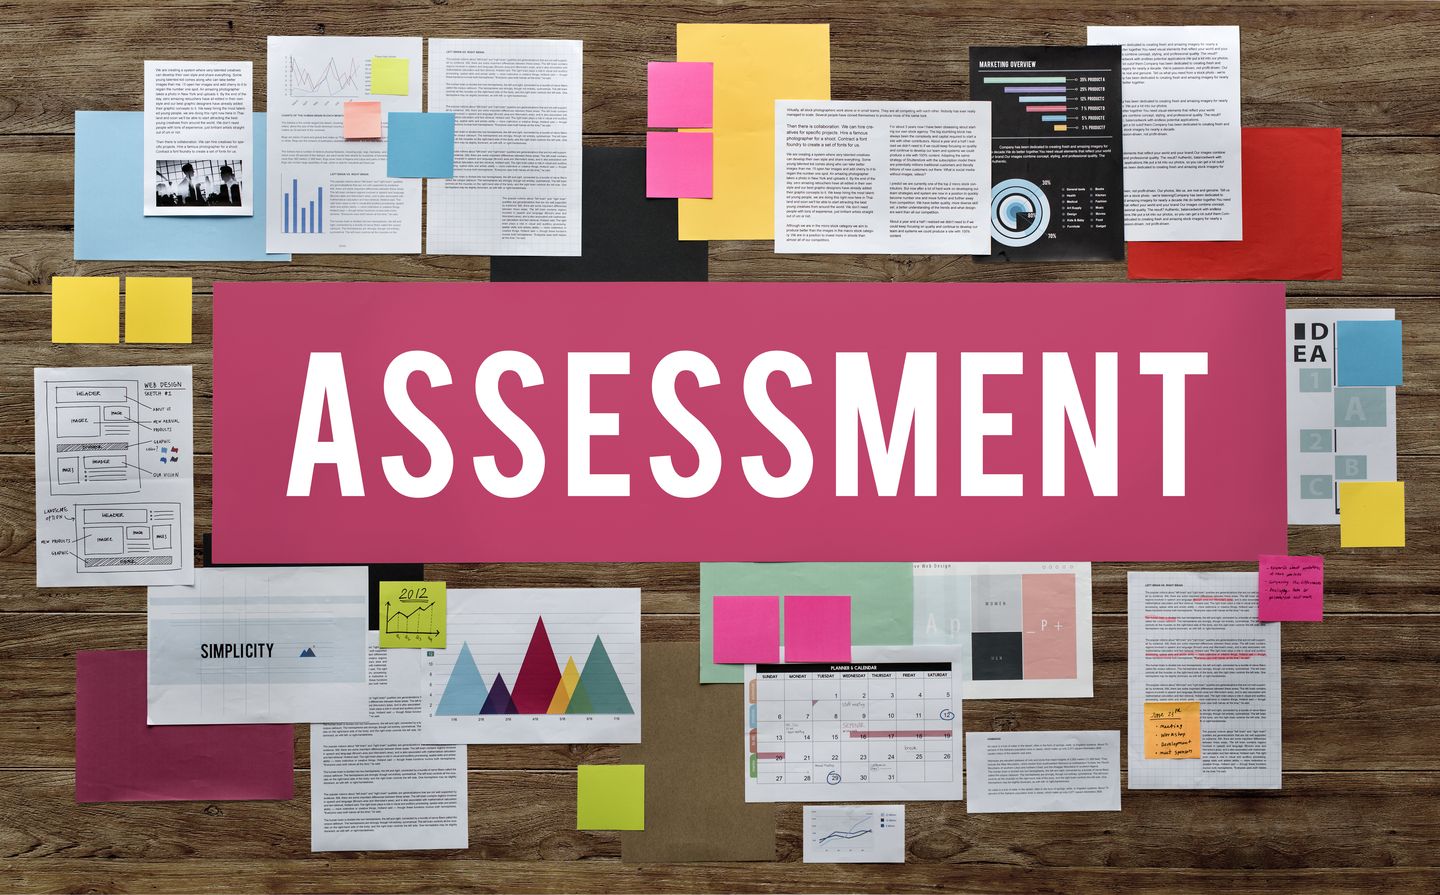 Assessment dilakukan sebagai upaya peningkatan mutu atau nilai atas situasi maupun individu.